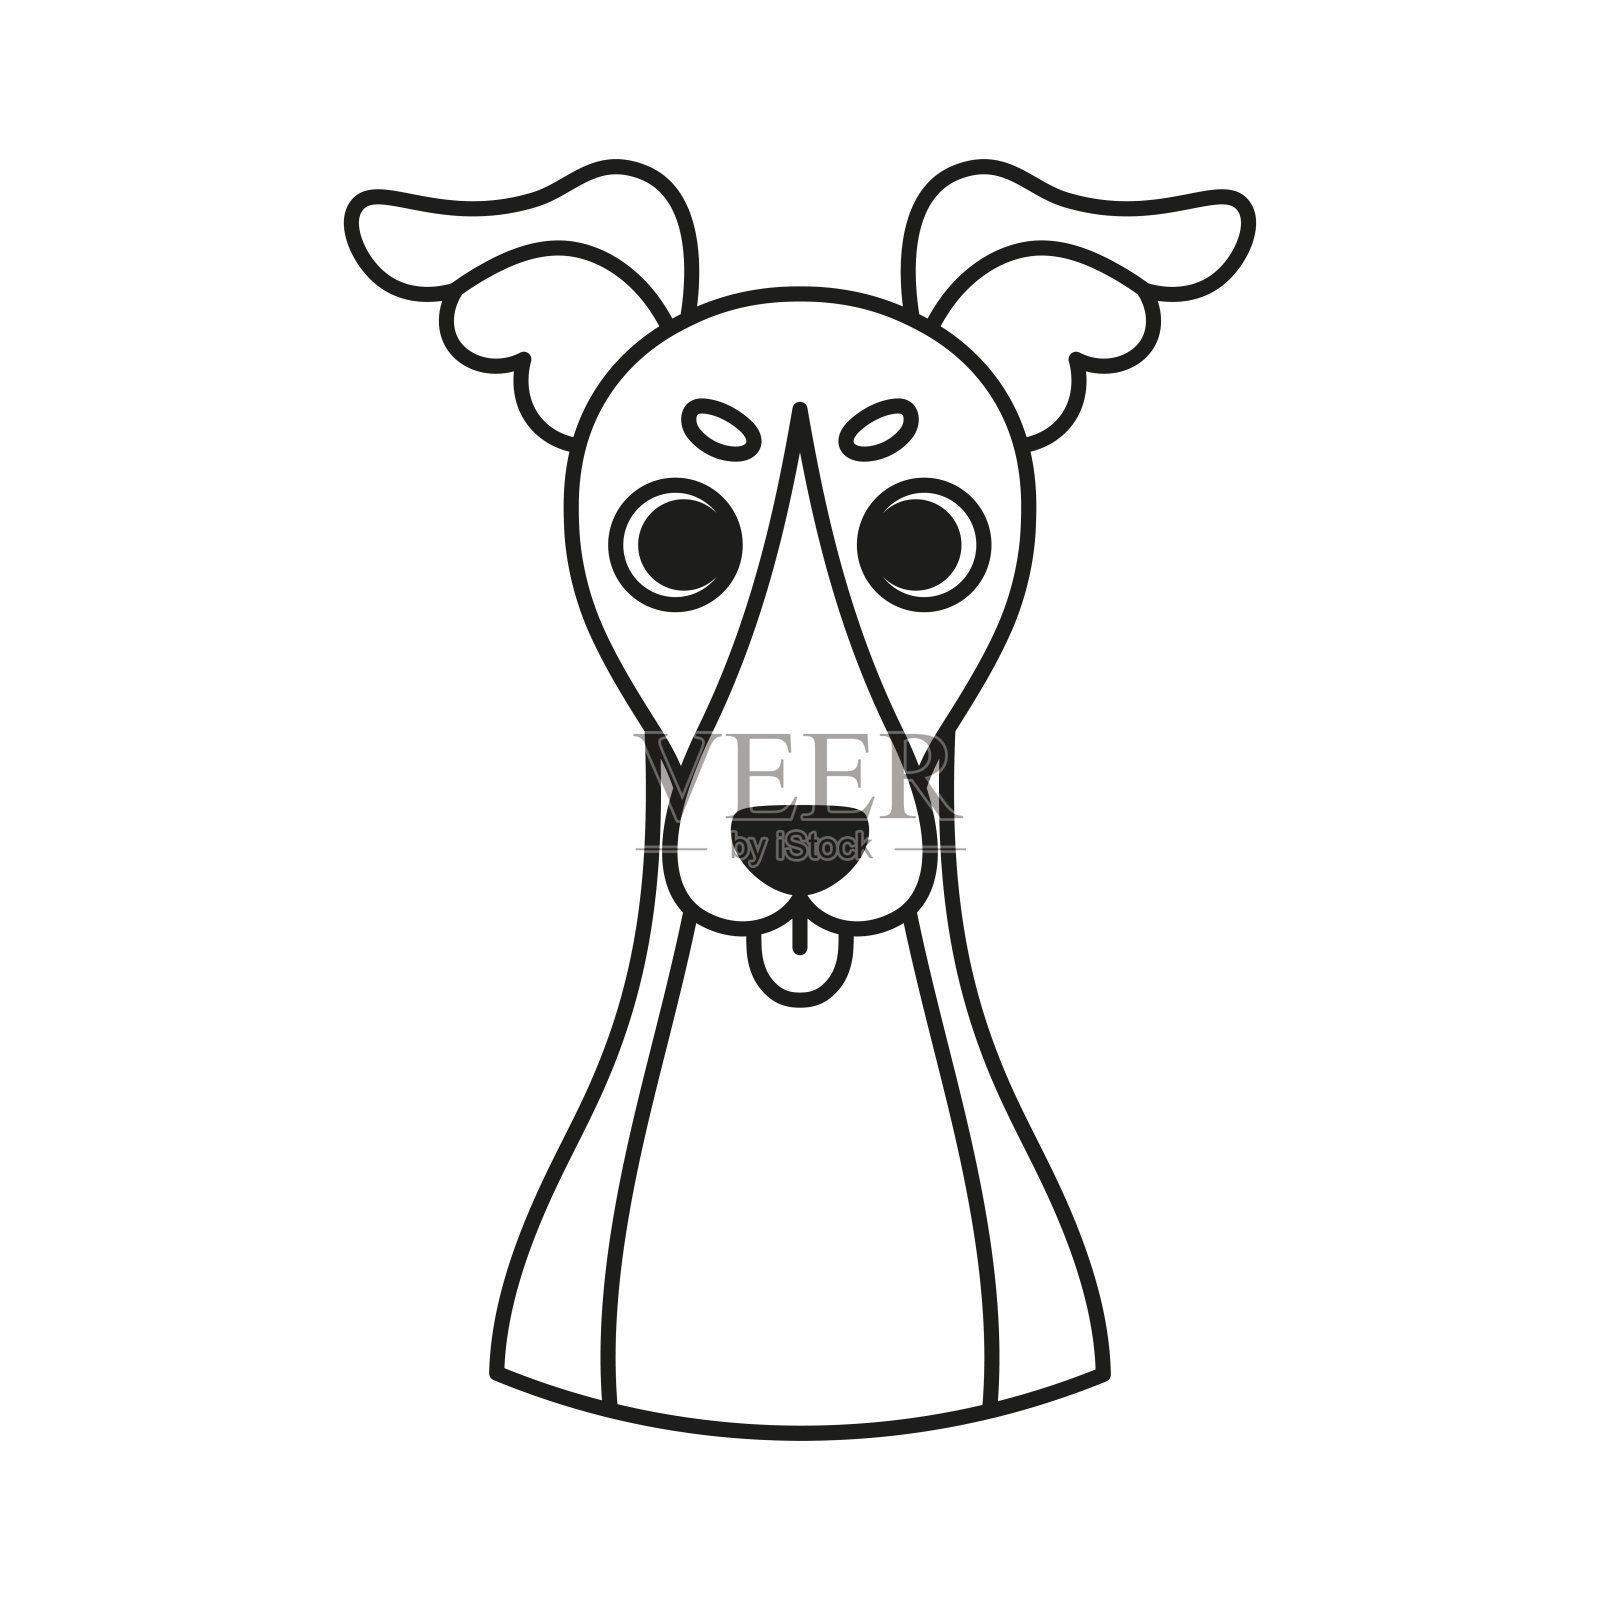 400,000+张最精彩的“惠比特犬”图片 · 100%免费下载 · Pexels素材图片